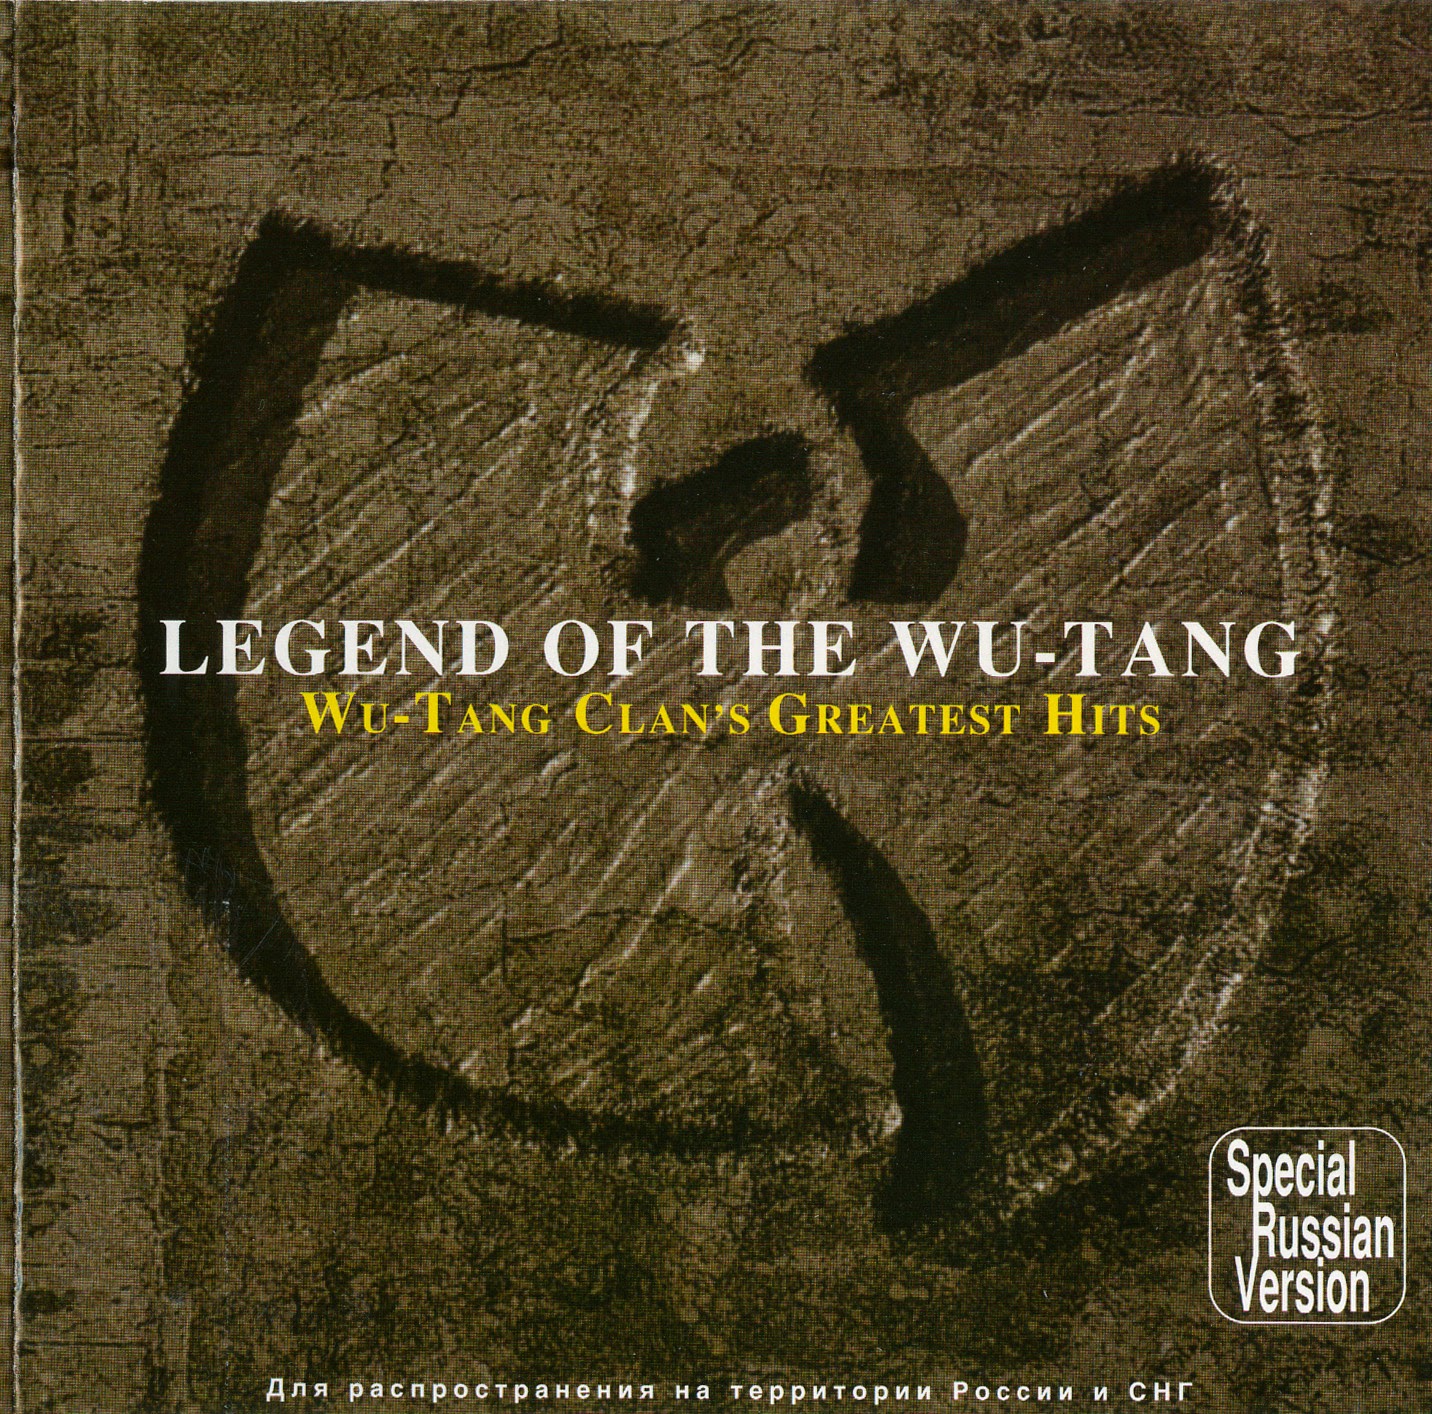 Download lagu Wu Tang Clan Instrumental (585.94 kB) - Mp3 Free Download